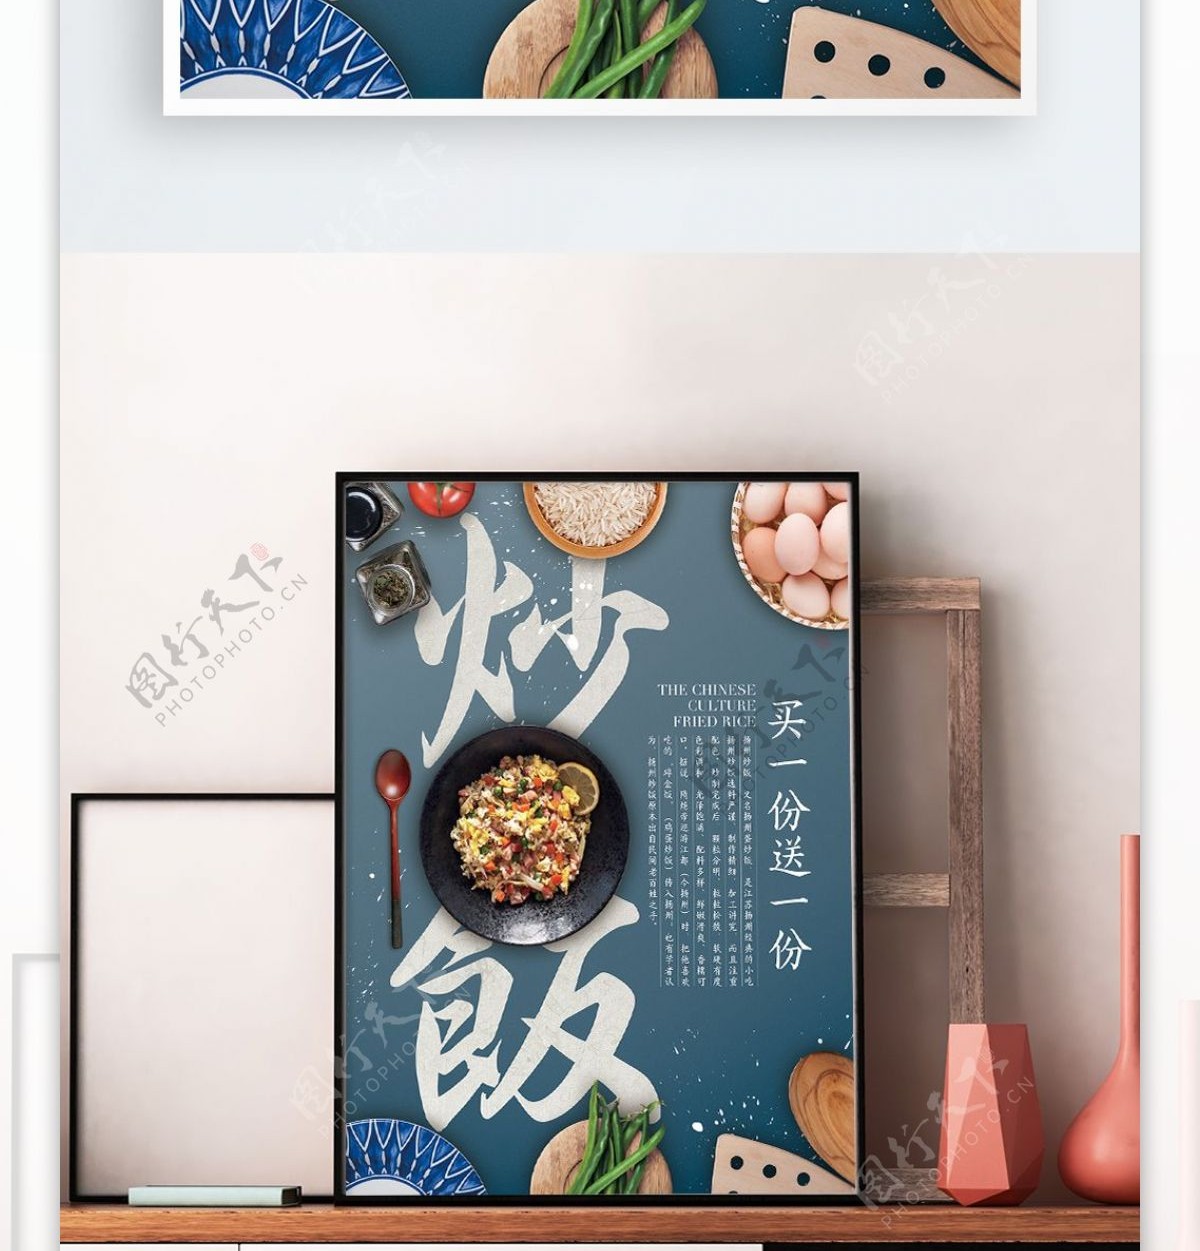 中国风简约美式炒饭饭店餐厅宣传海报